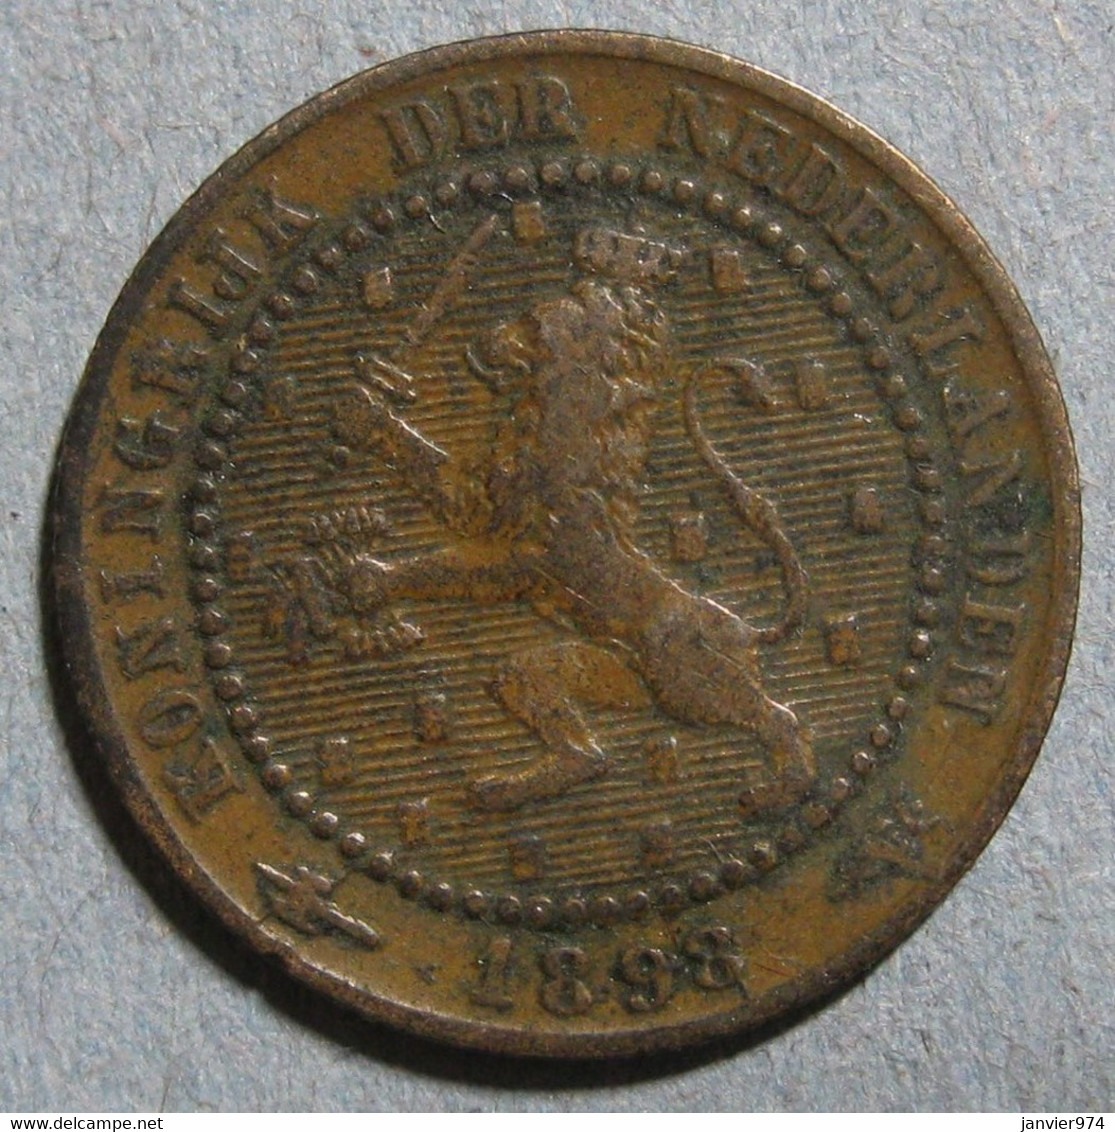 Pays-Bas, 2 1/2 Cents 1918, WILHELMINA I. Bronze. KM# 150 - 2.5 Cent